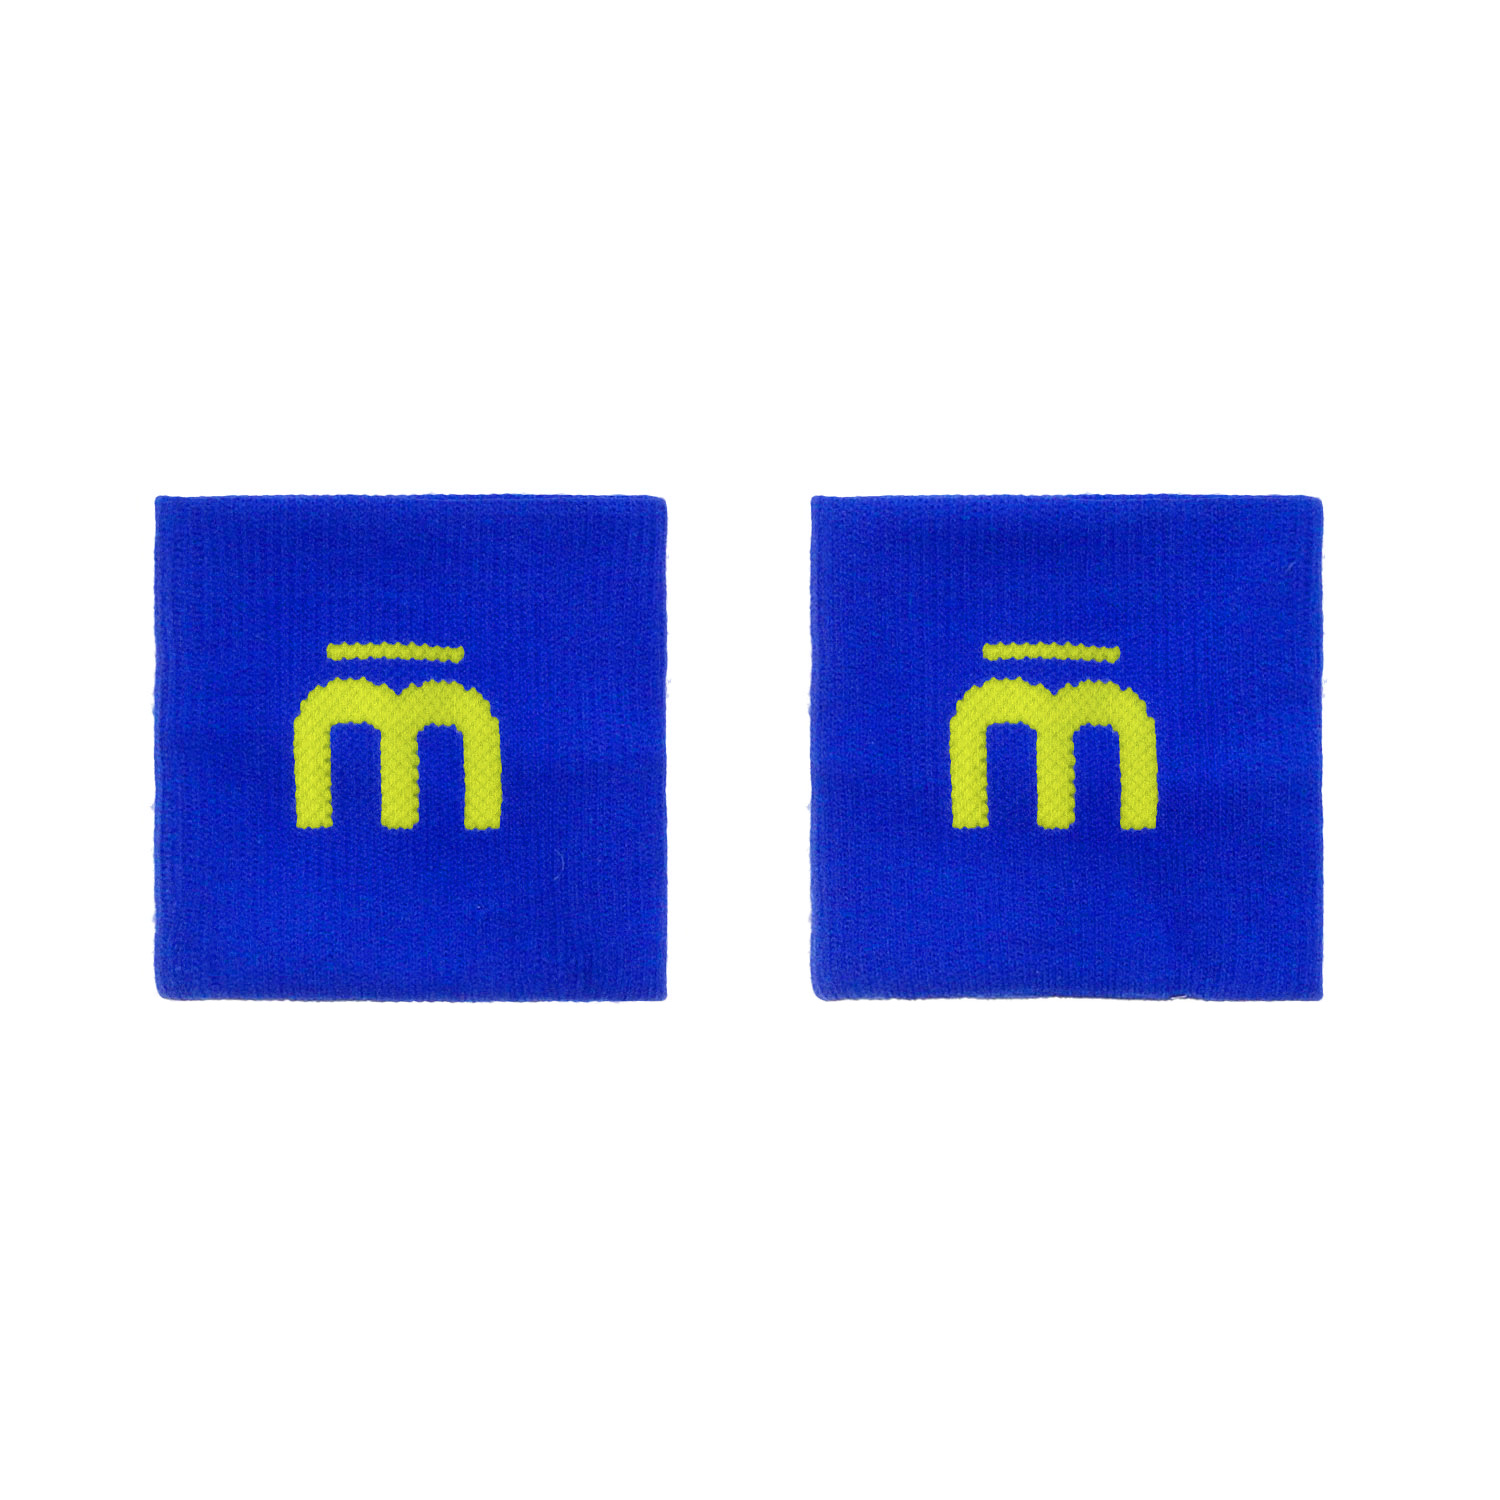 Mico Logo Polsini Corti - Bluette